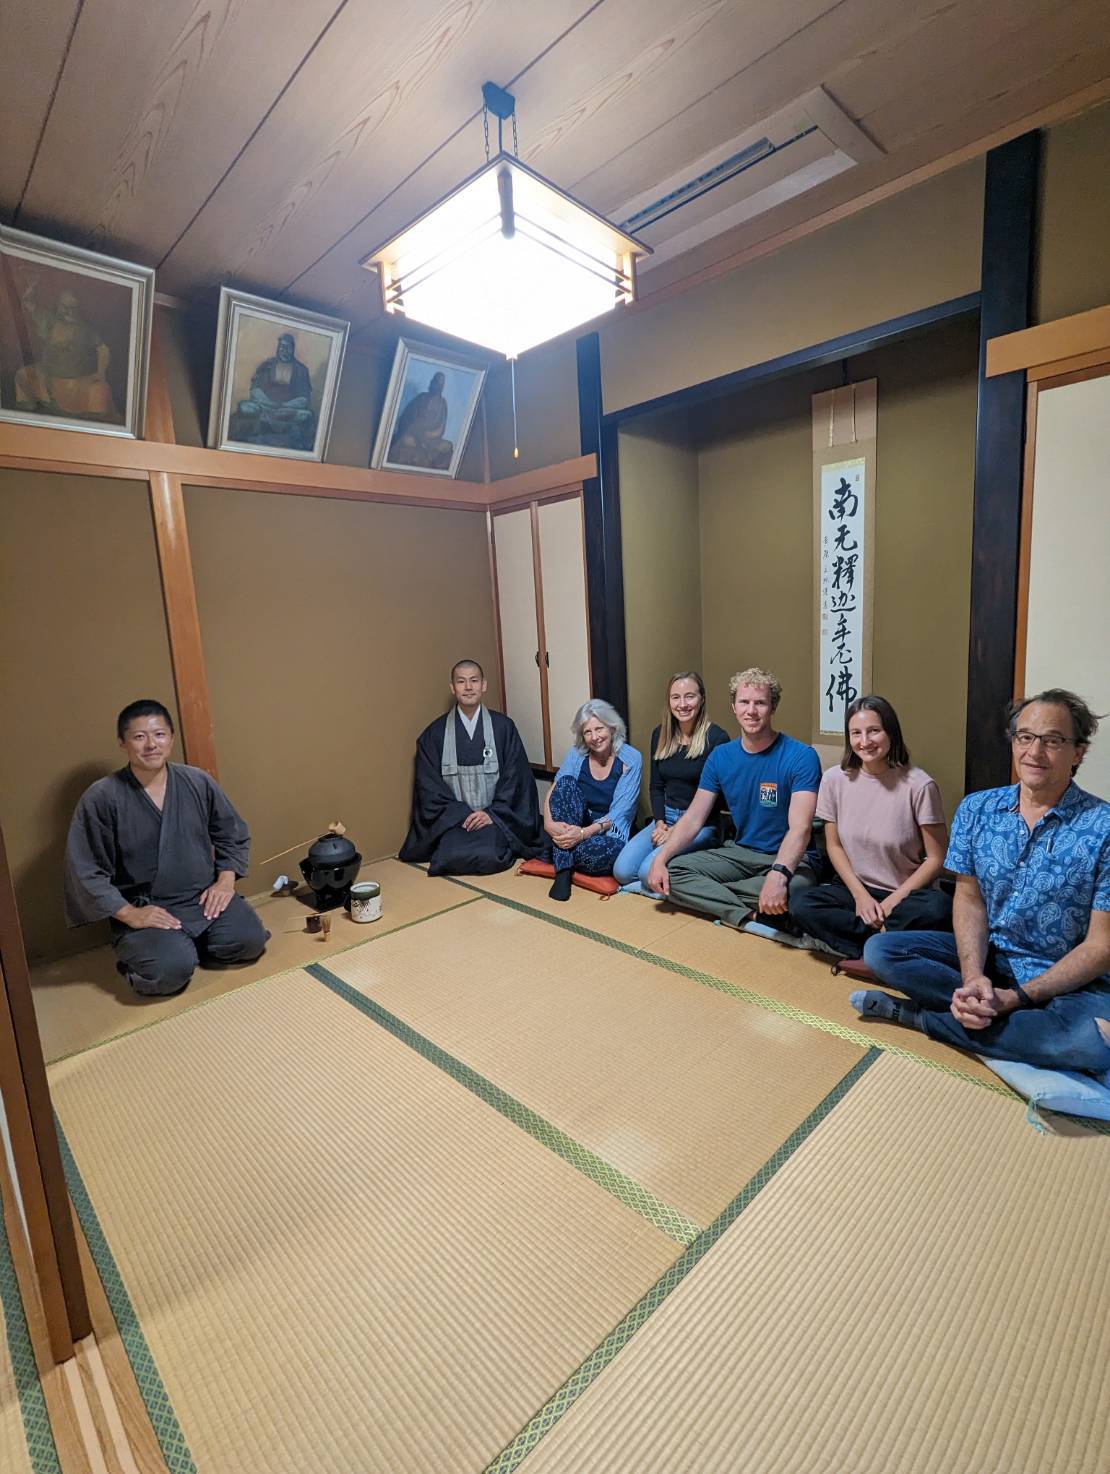 京都宇治・宝善院での茶道体験の様子です。ハワイ在住の方たちが日本の文化を楽しまれにお越しでした。